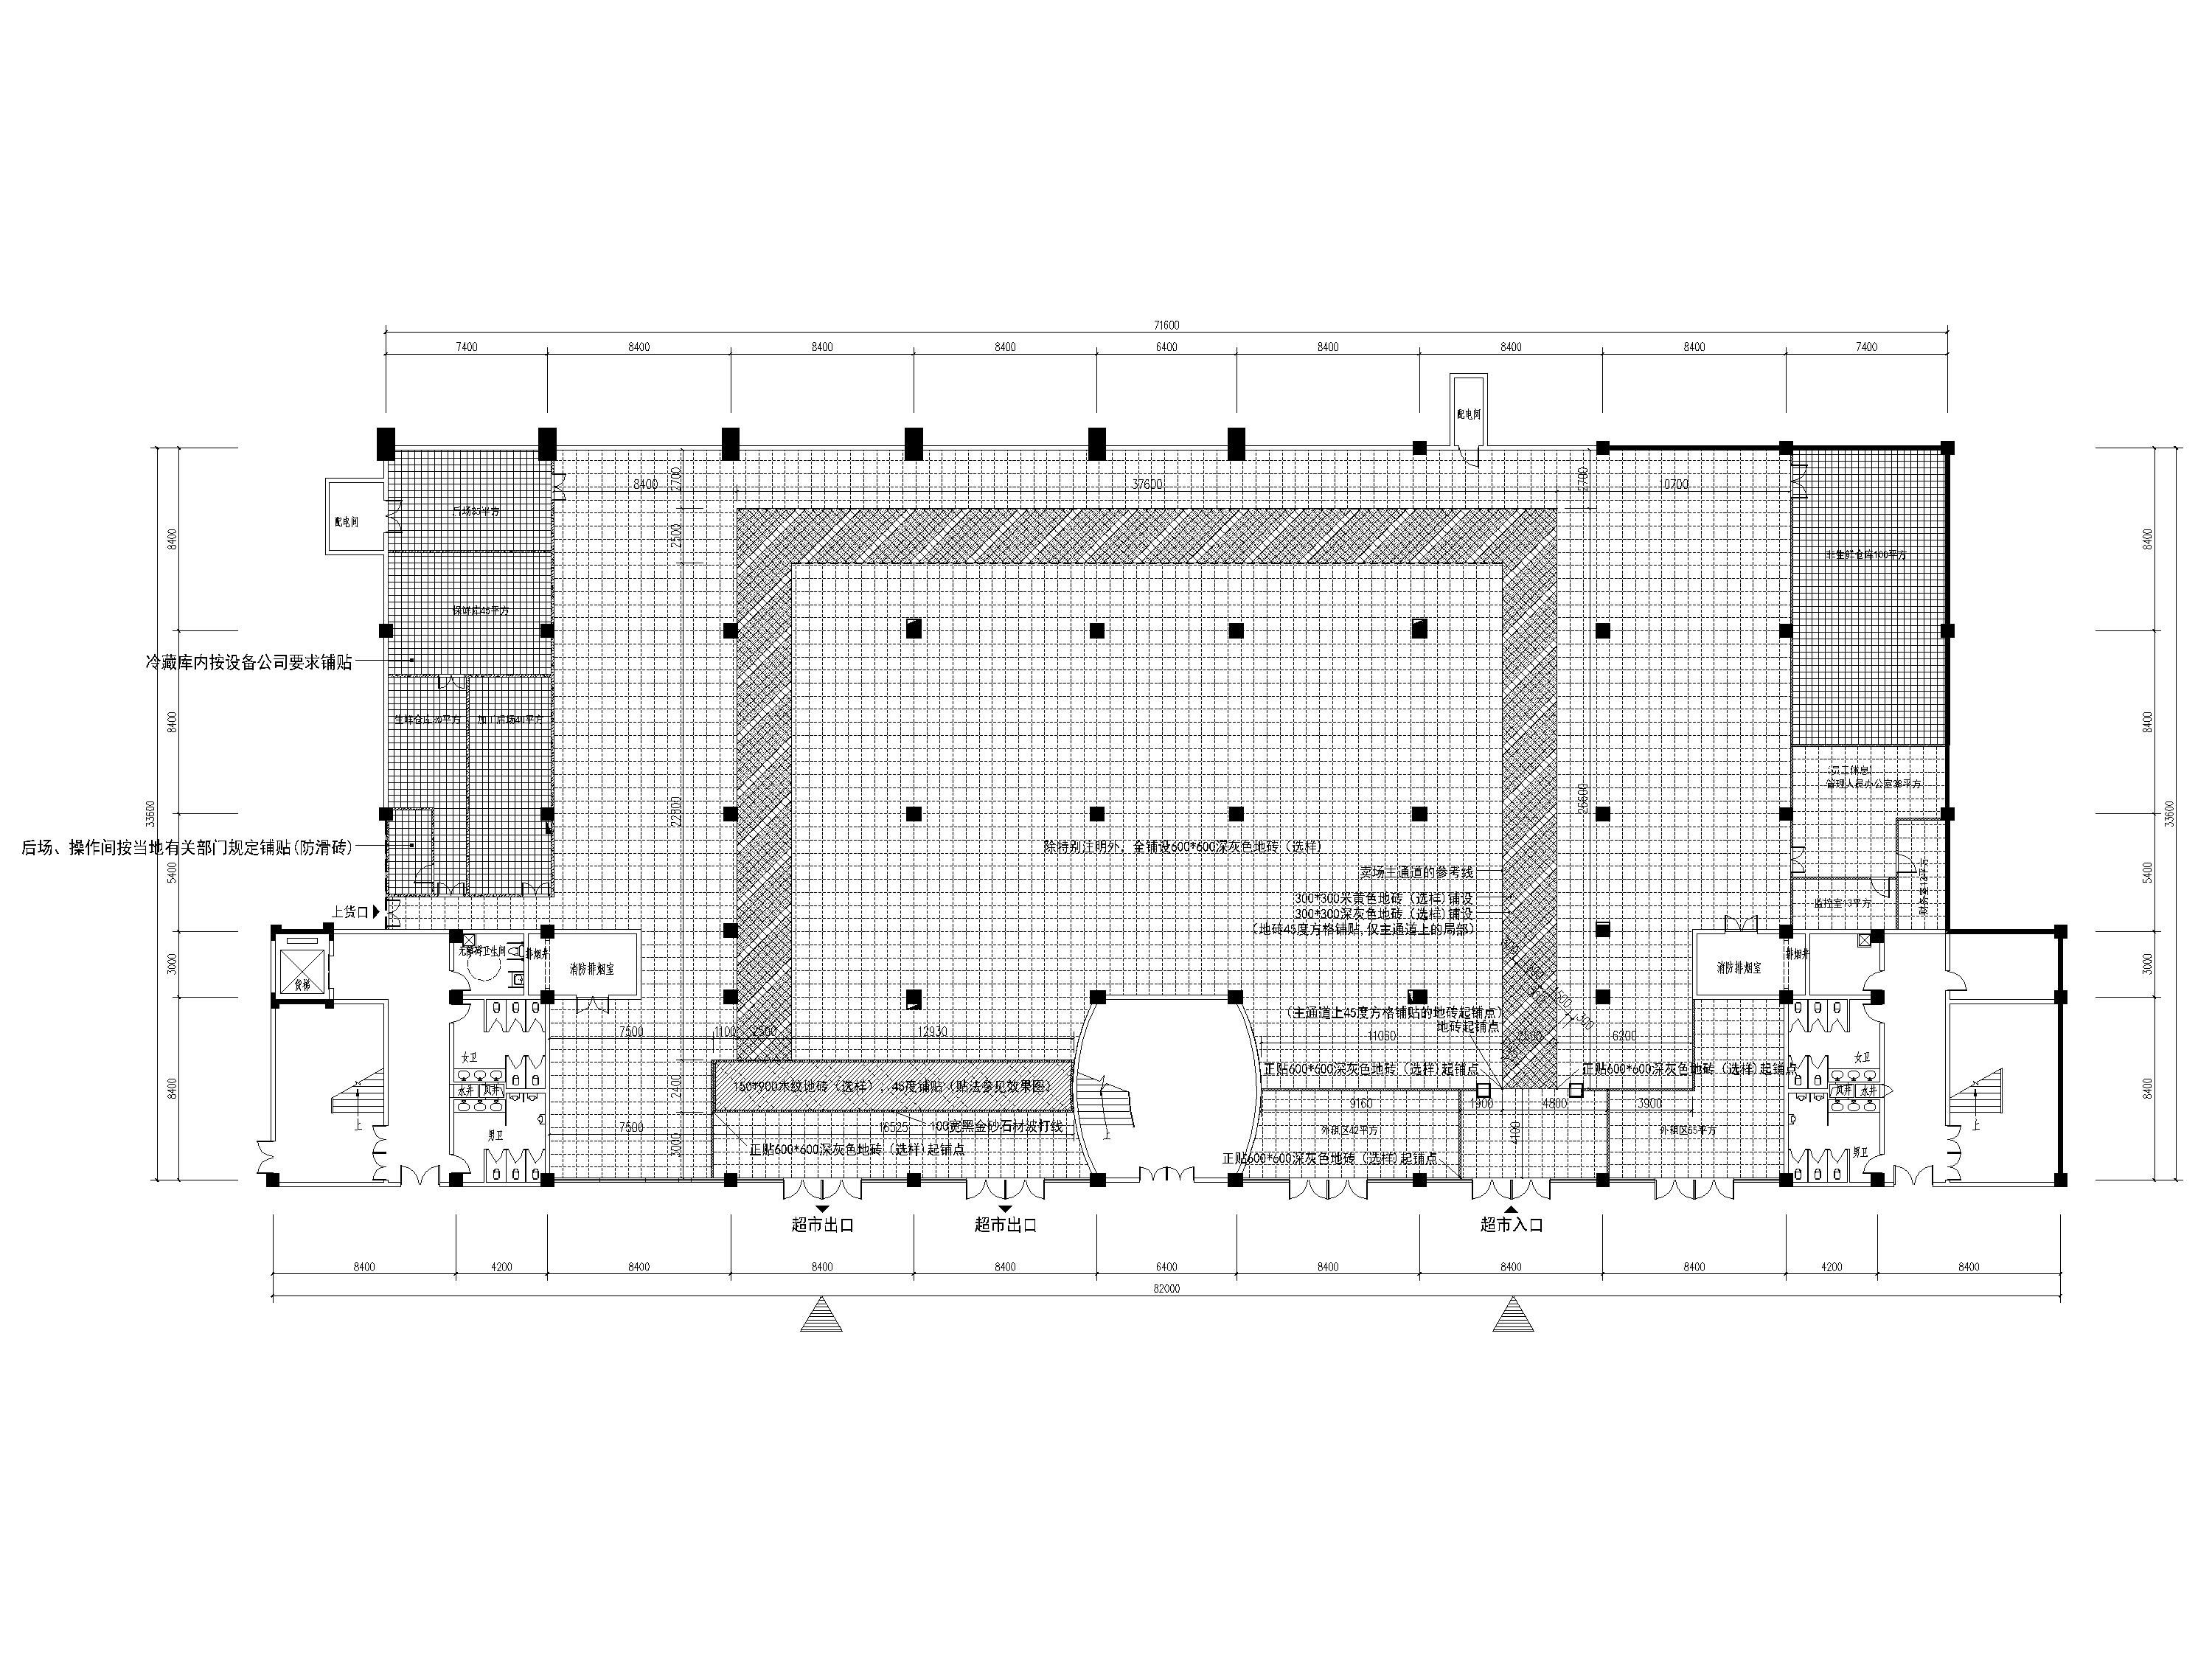 [湖北]2516㎡北山超市室内装修设计施工图-地面材质铺设图